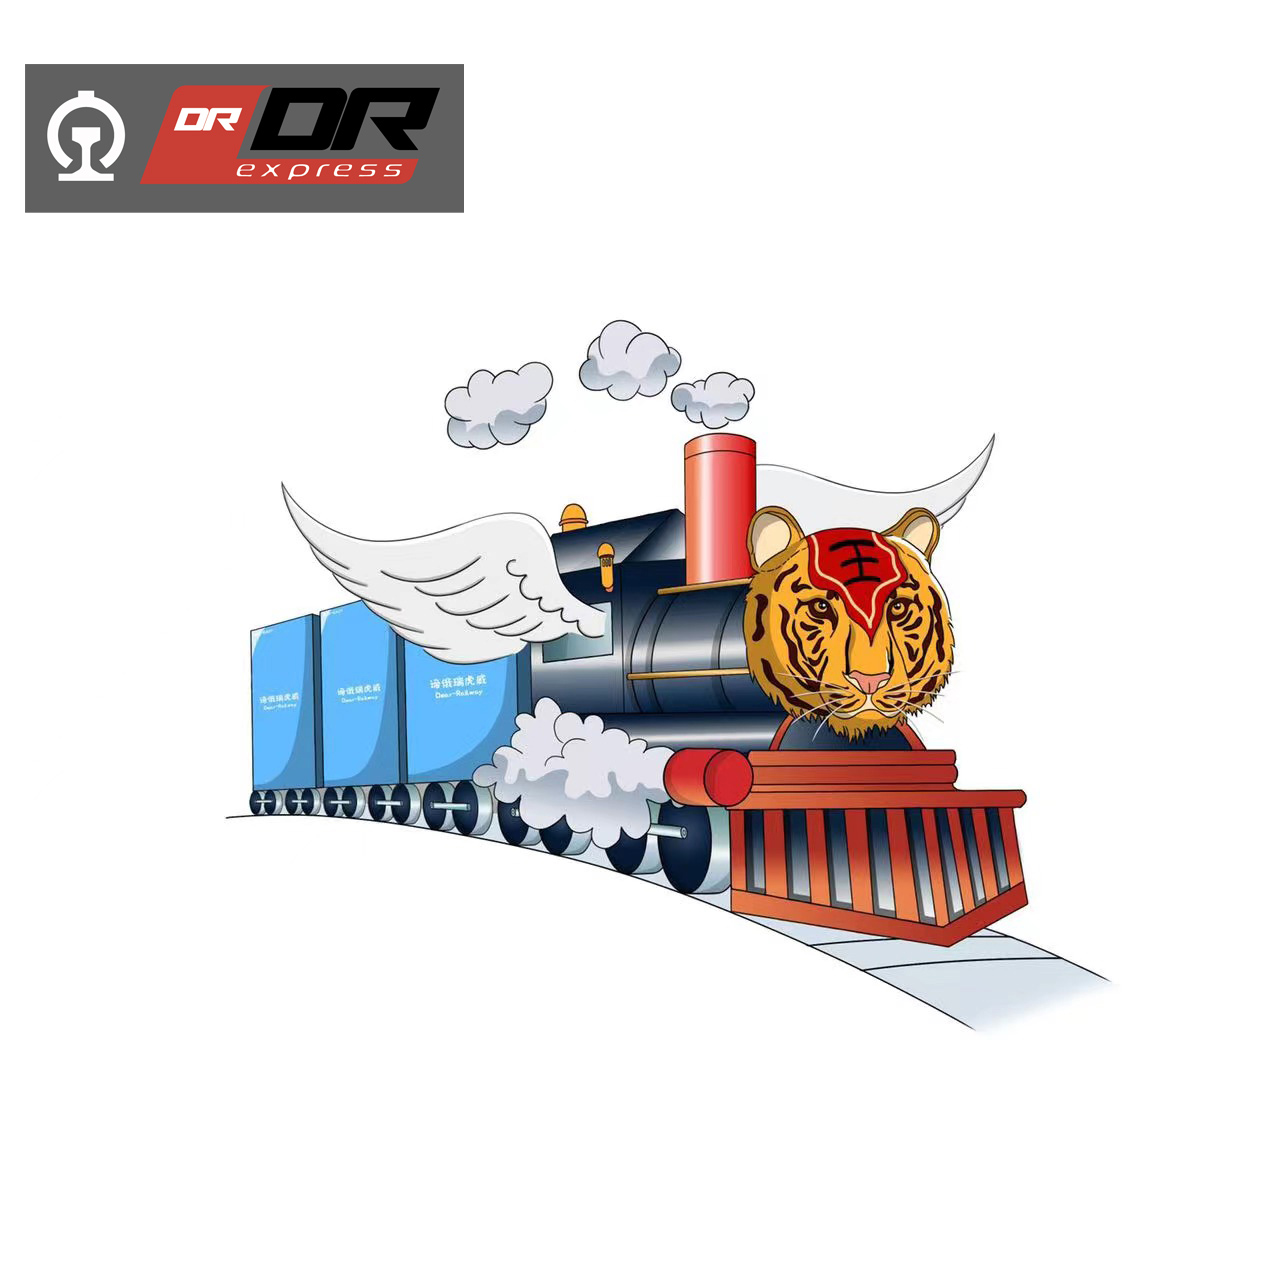 Pneus de transport ferroviaire de la Chine vers la Russie.